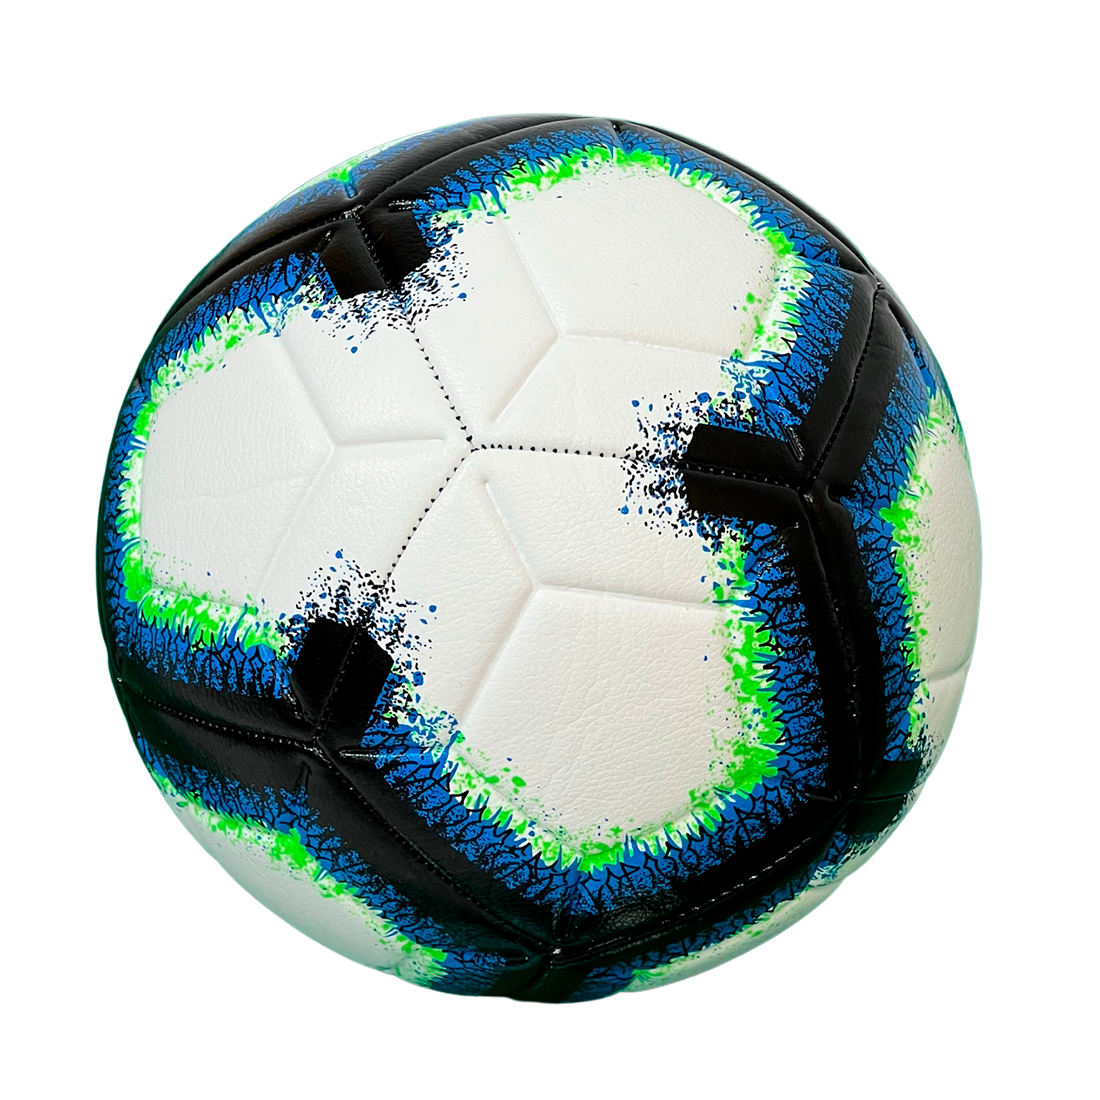 М'яч футбольний Europaw AFB 5 синій-чорний